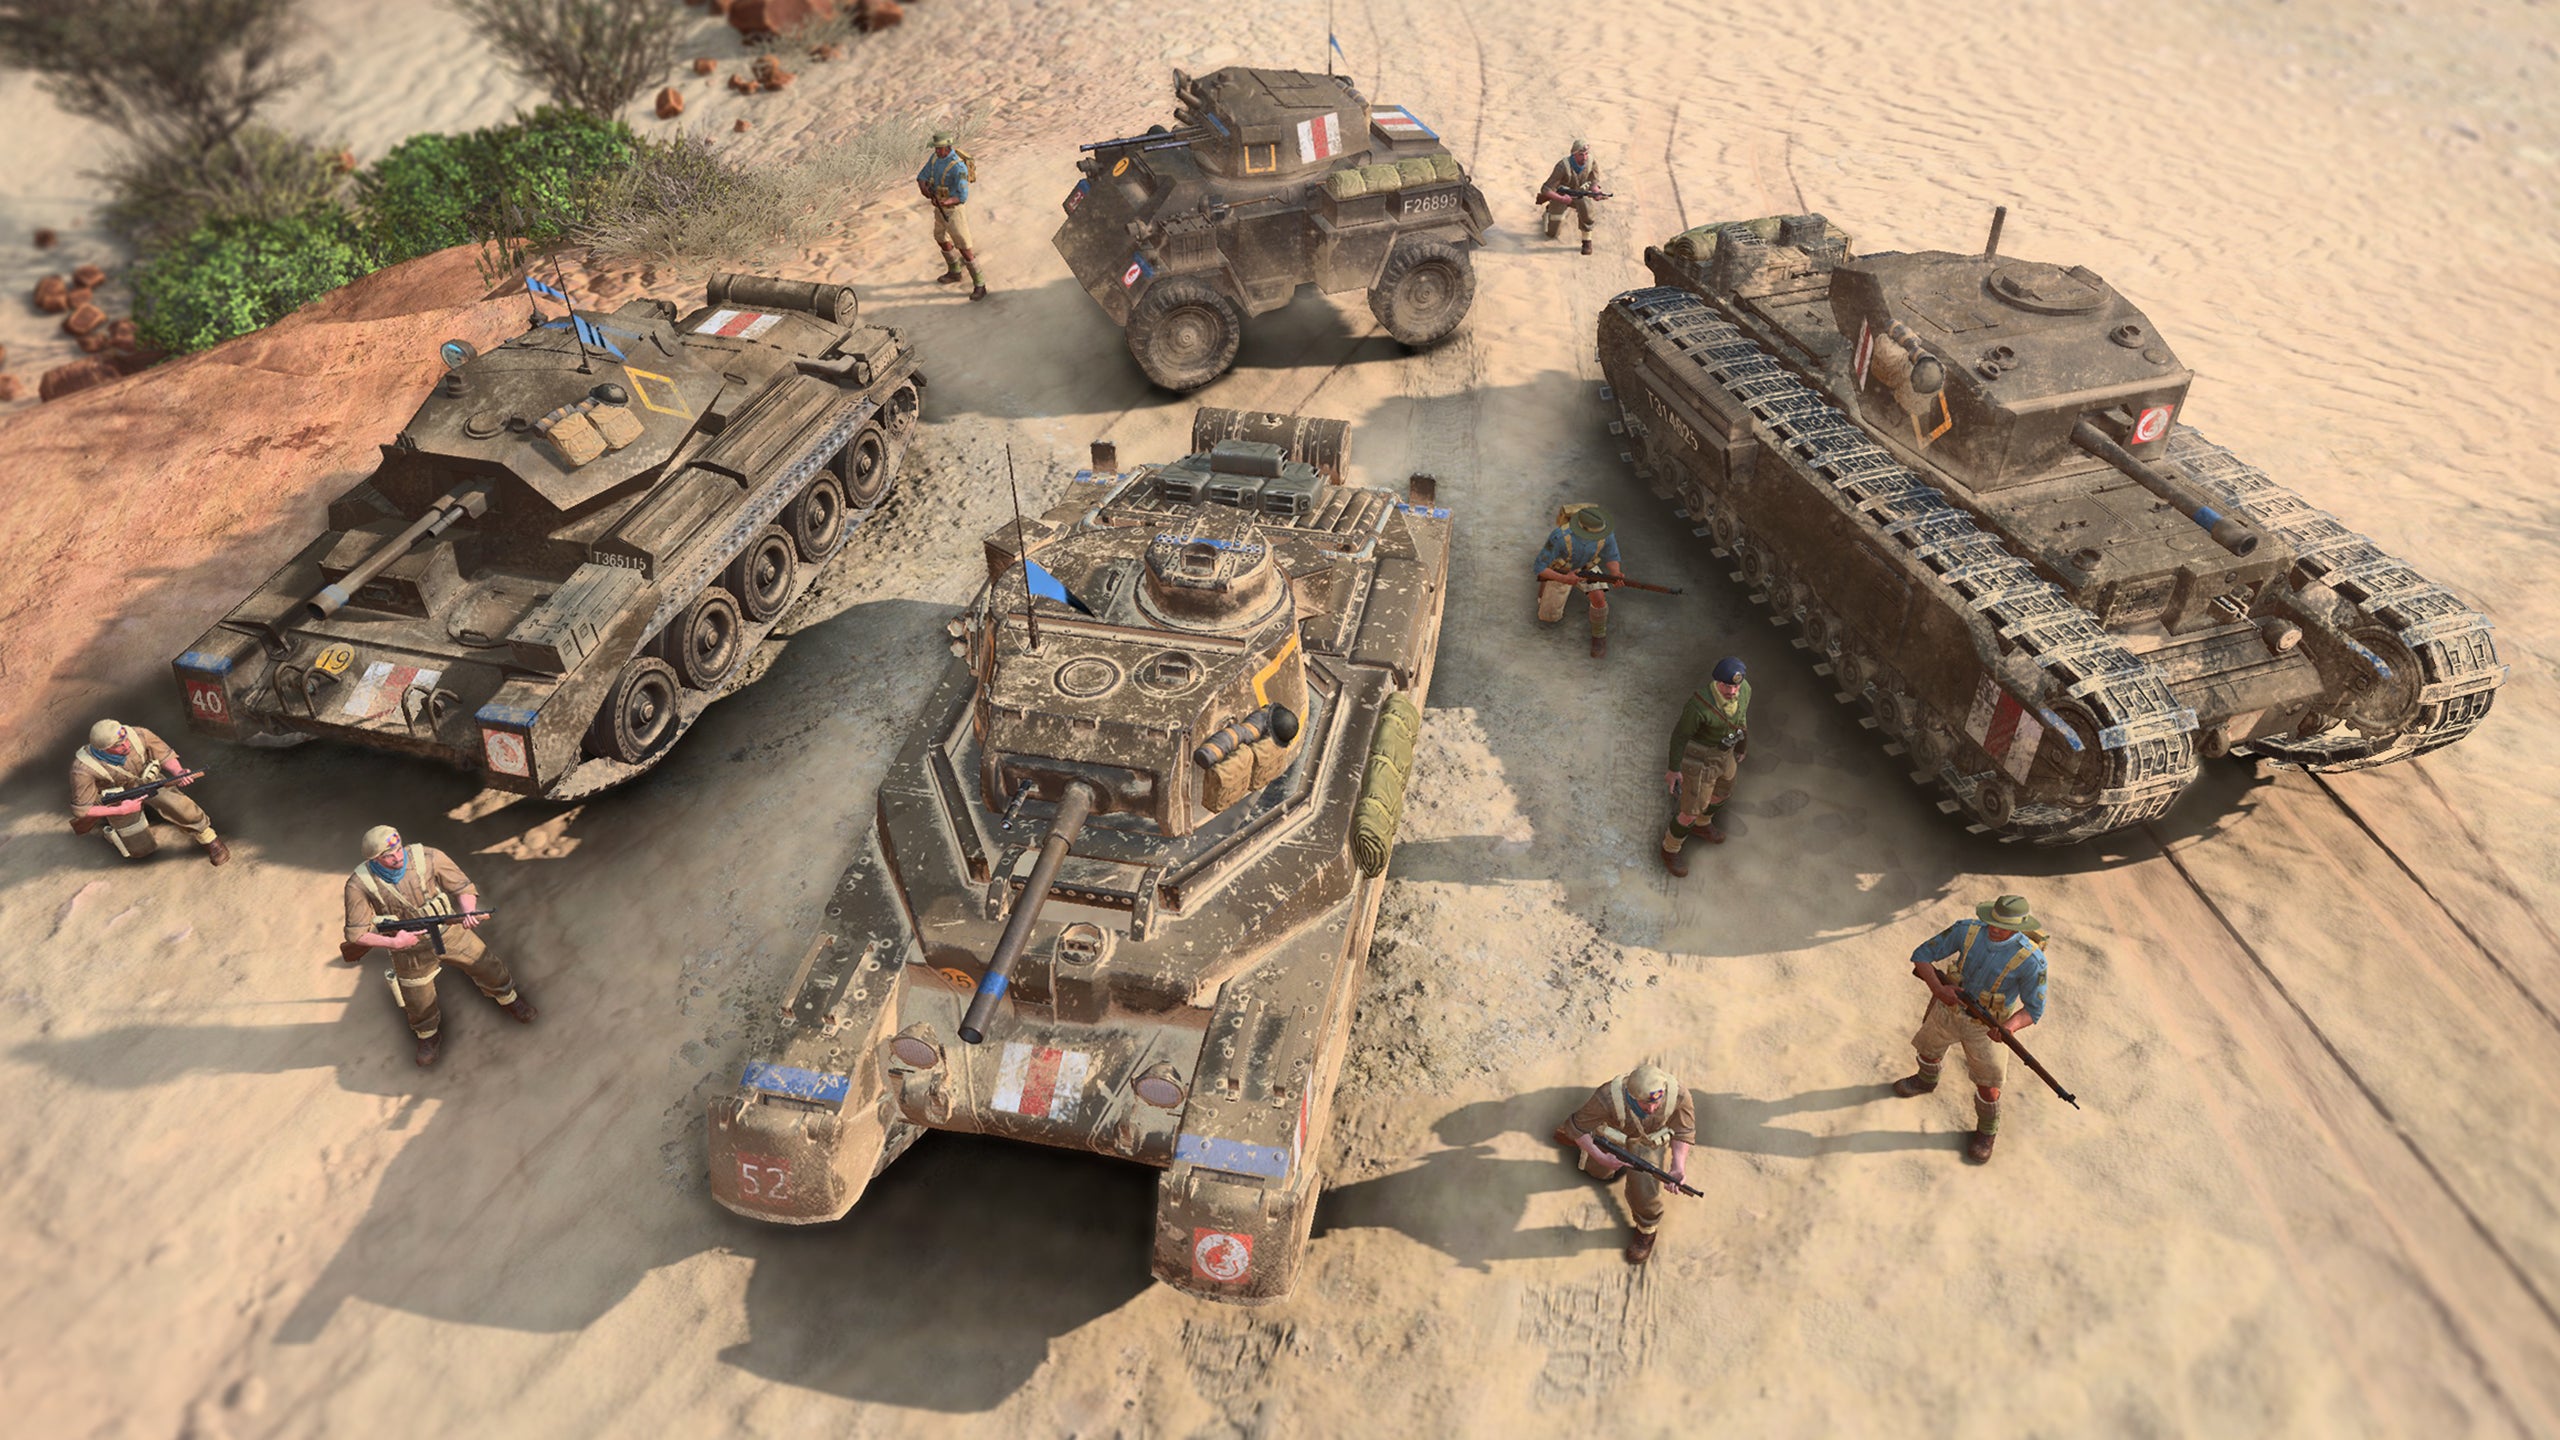 Pratinjau Company of Heroes 3 - pemandangan empat tank Inggris dan beberapa unit infanteri di padang pasir